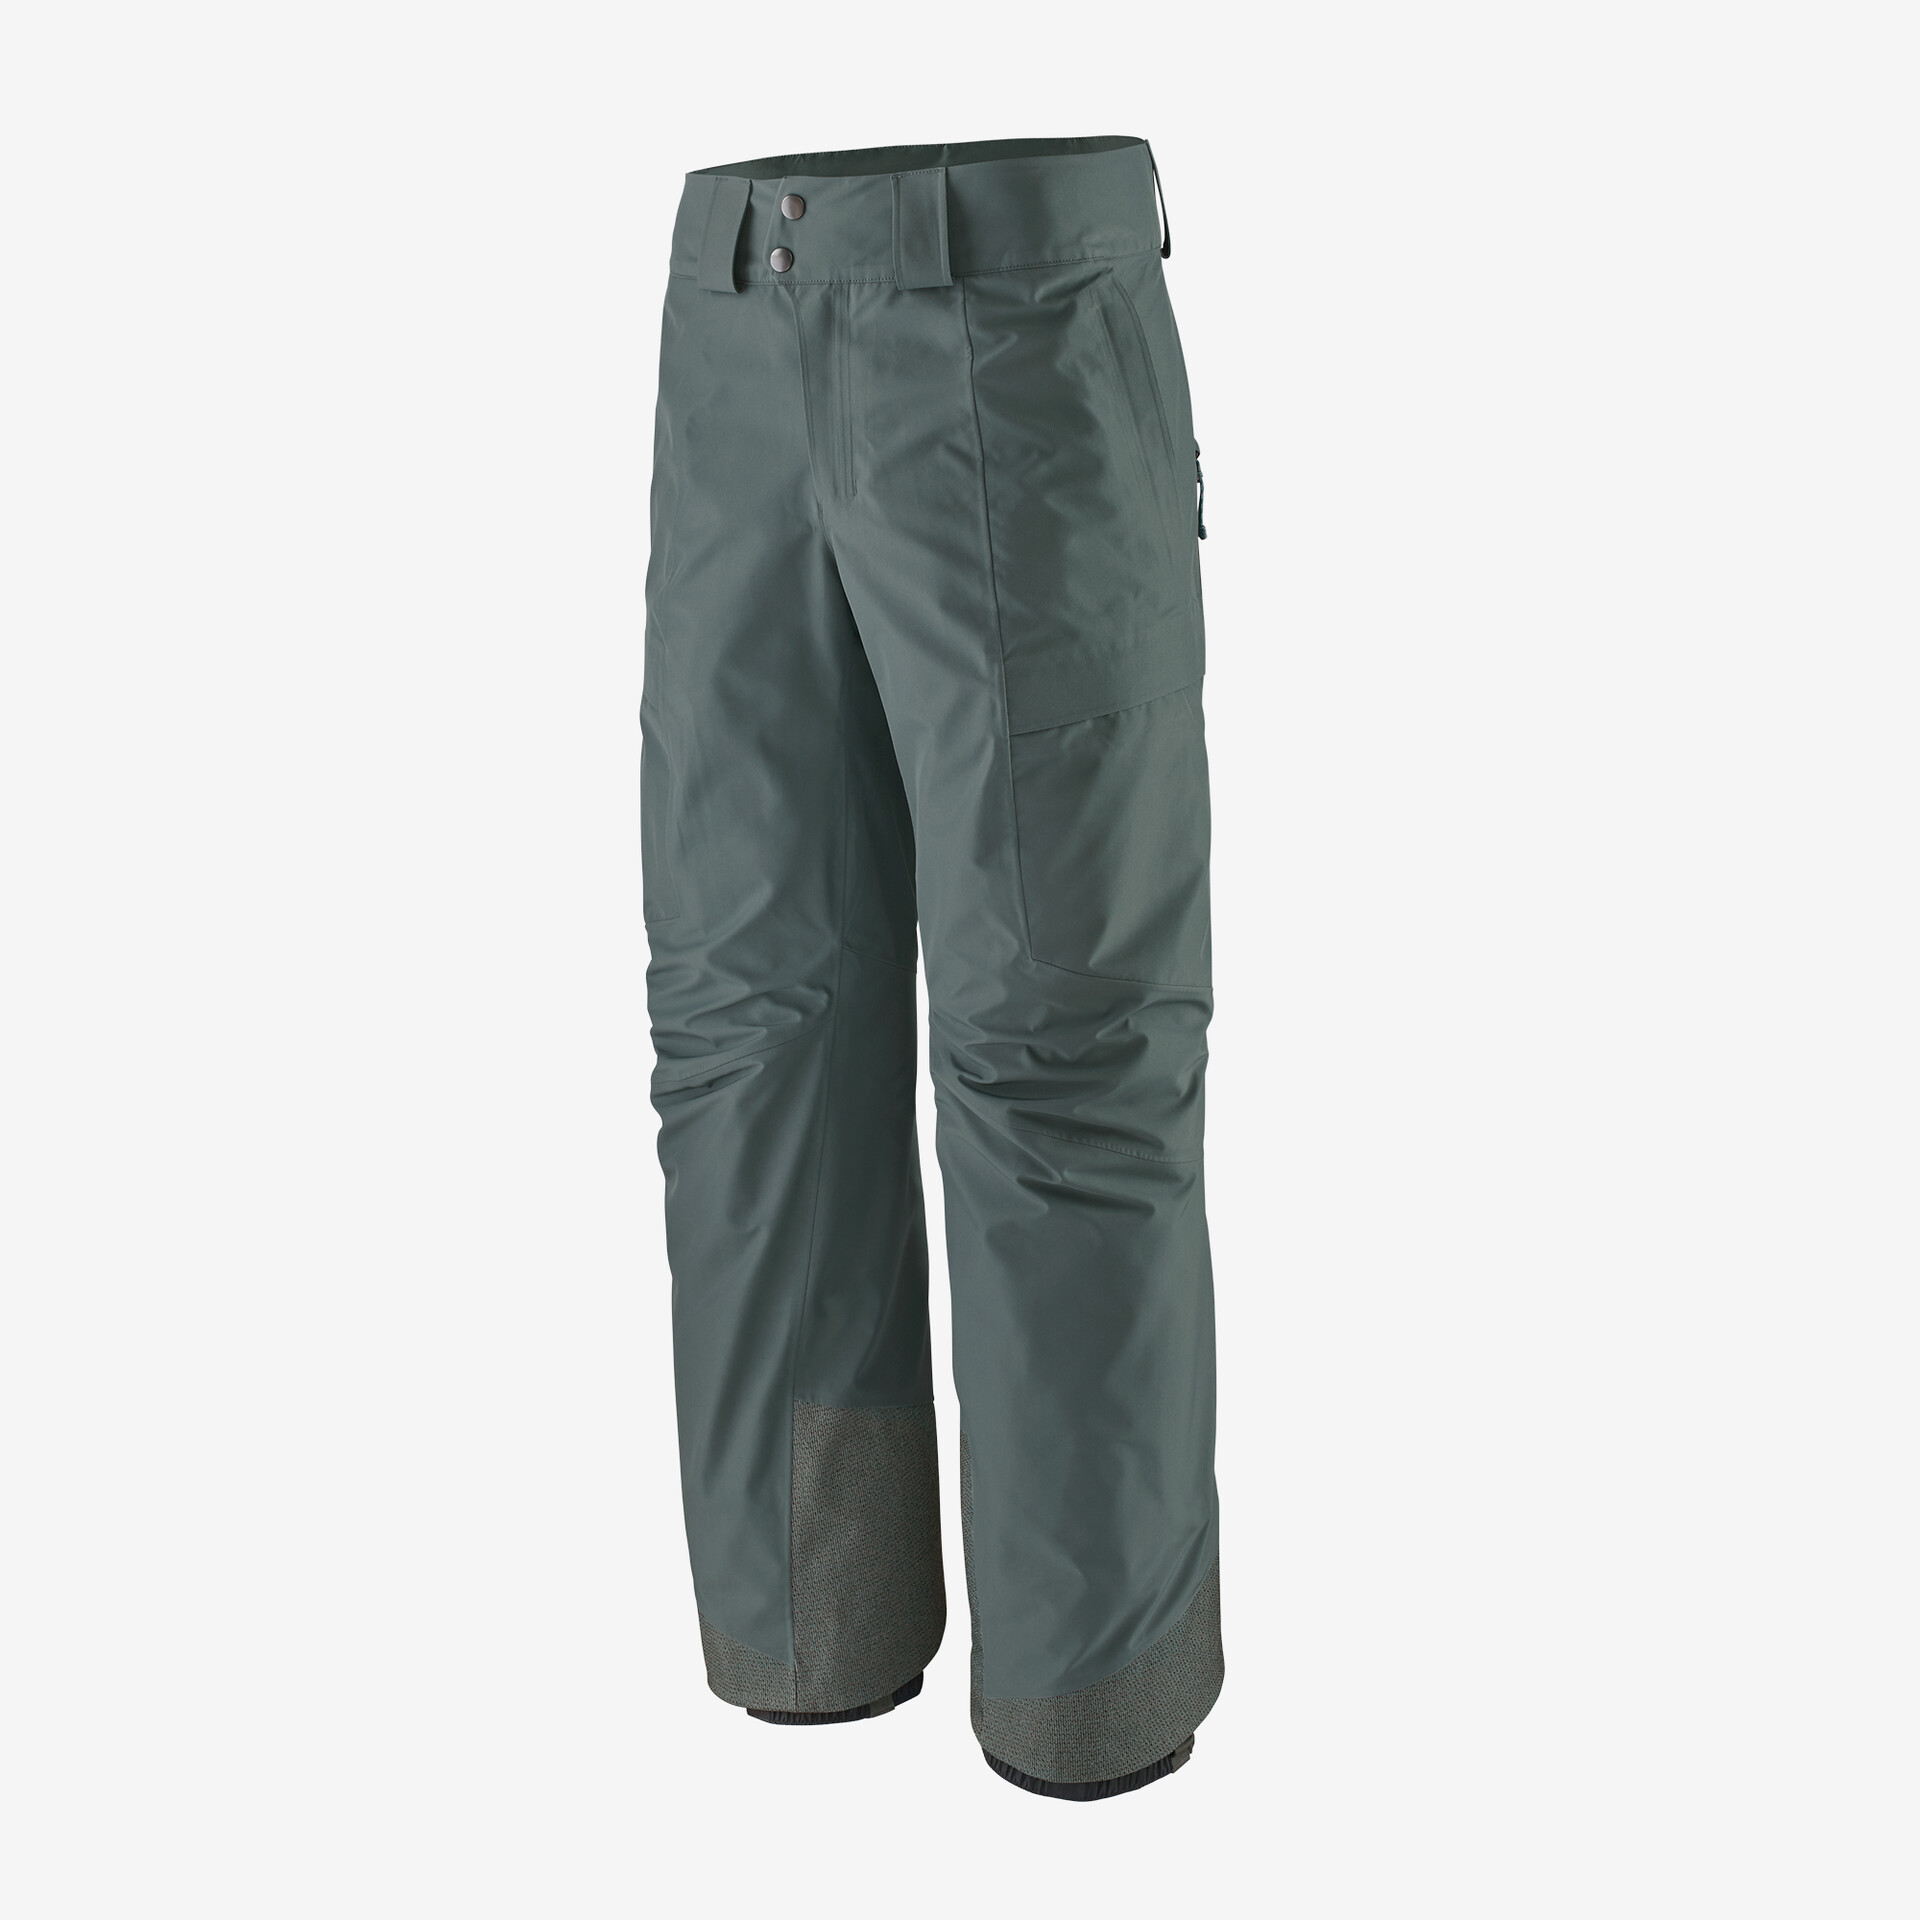 Мужские брюки Storm Shift Patagonia, нуво зеленый мужские брюки storm shift patagonia зеленый